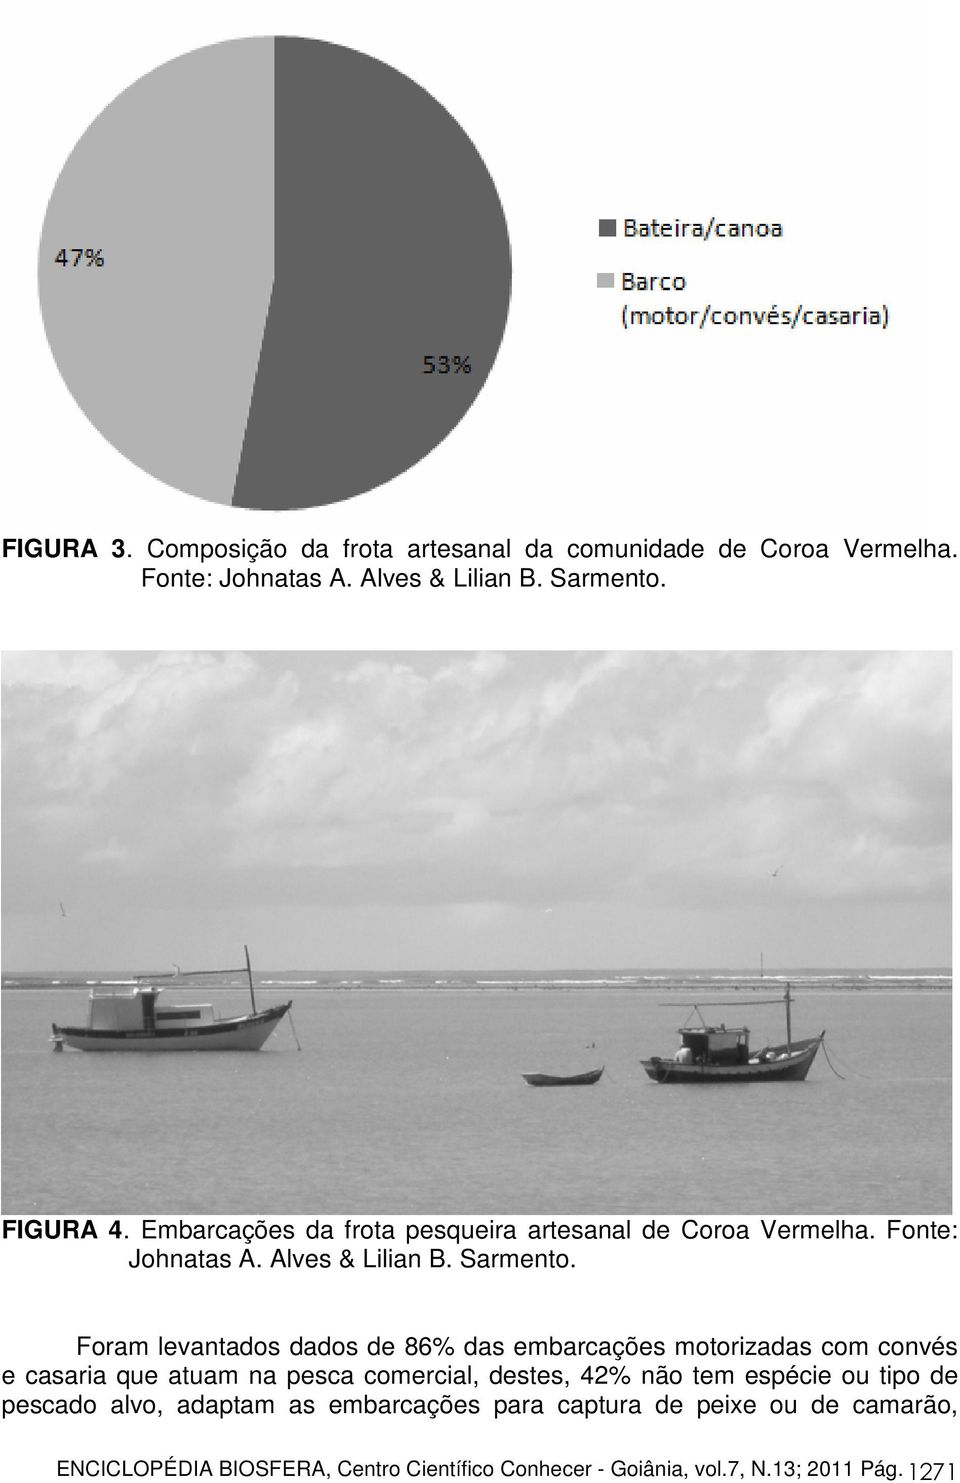 Foram levantados dados de 86% das embarcações motorizadas com convés e casaria que atuam na pesca comercial, destes, 42% não tem espécie